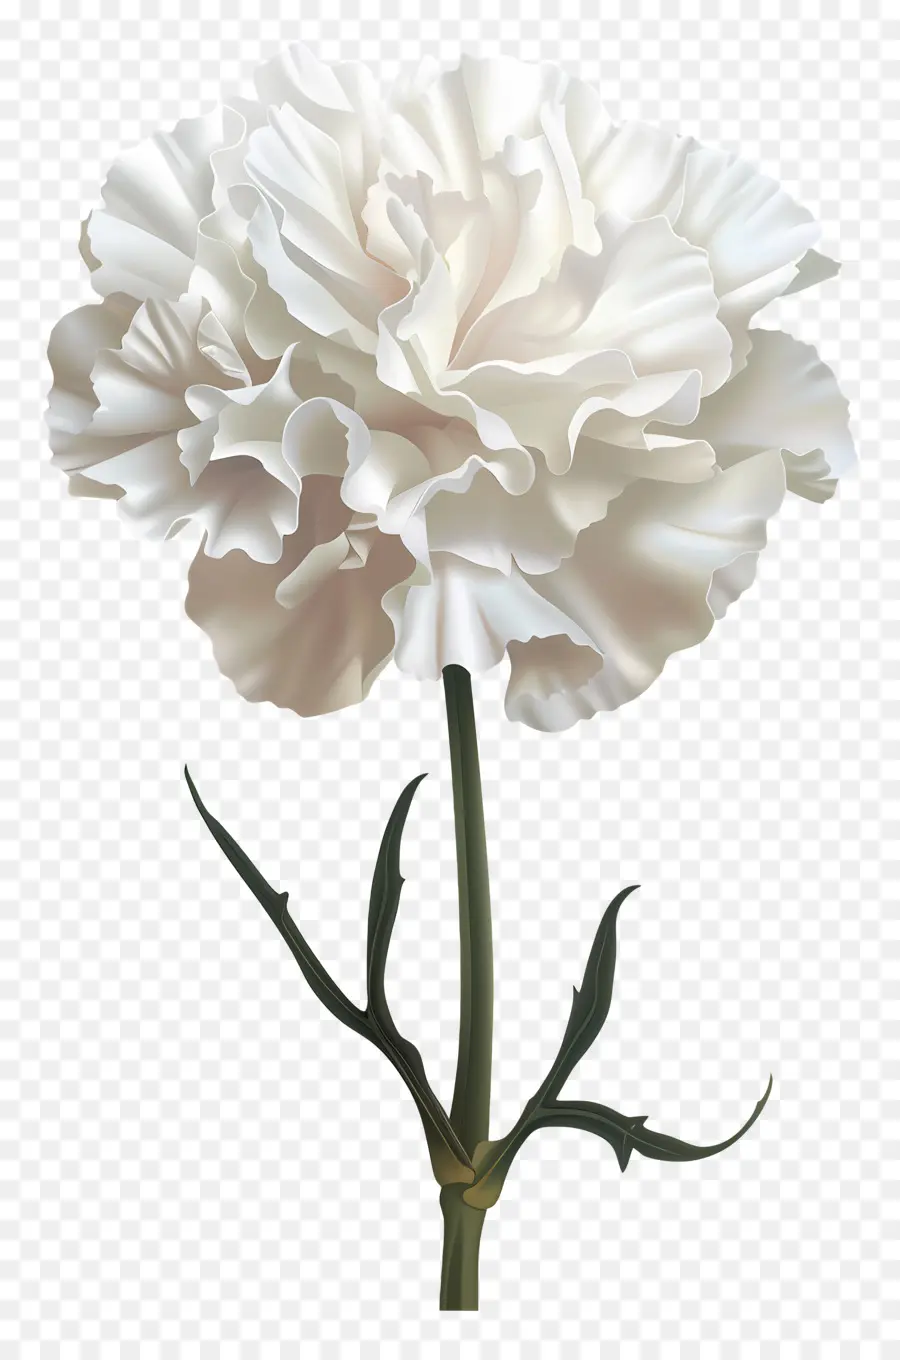 hoa thân - Carnation trắng với những cánh hoa héo nhưng tươi